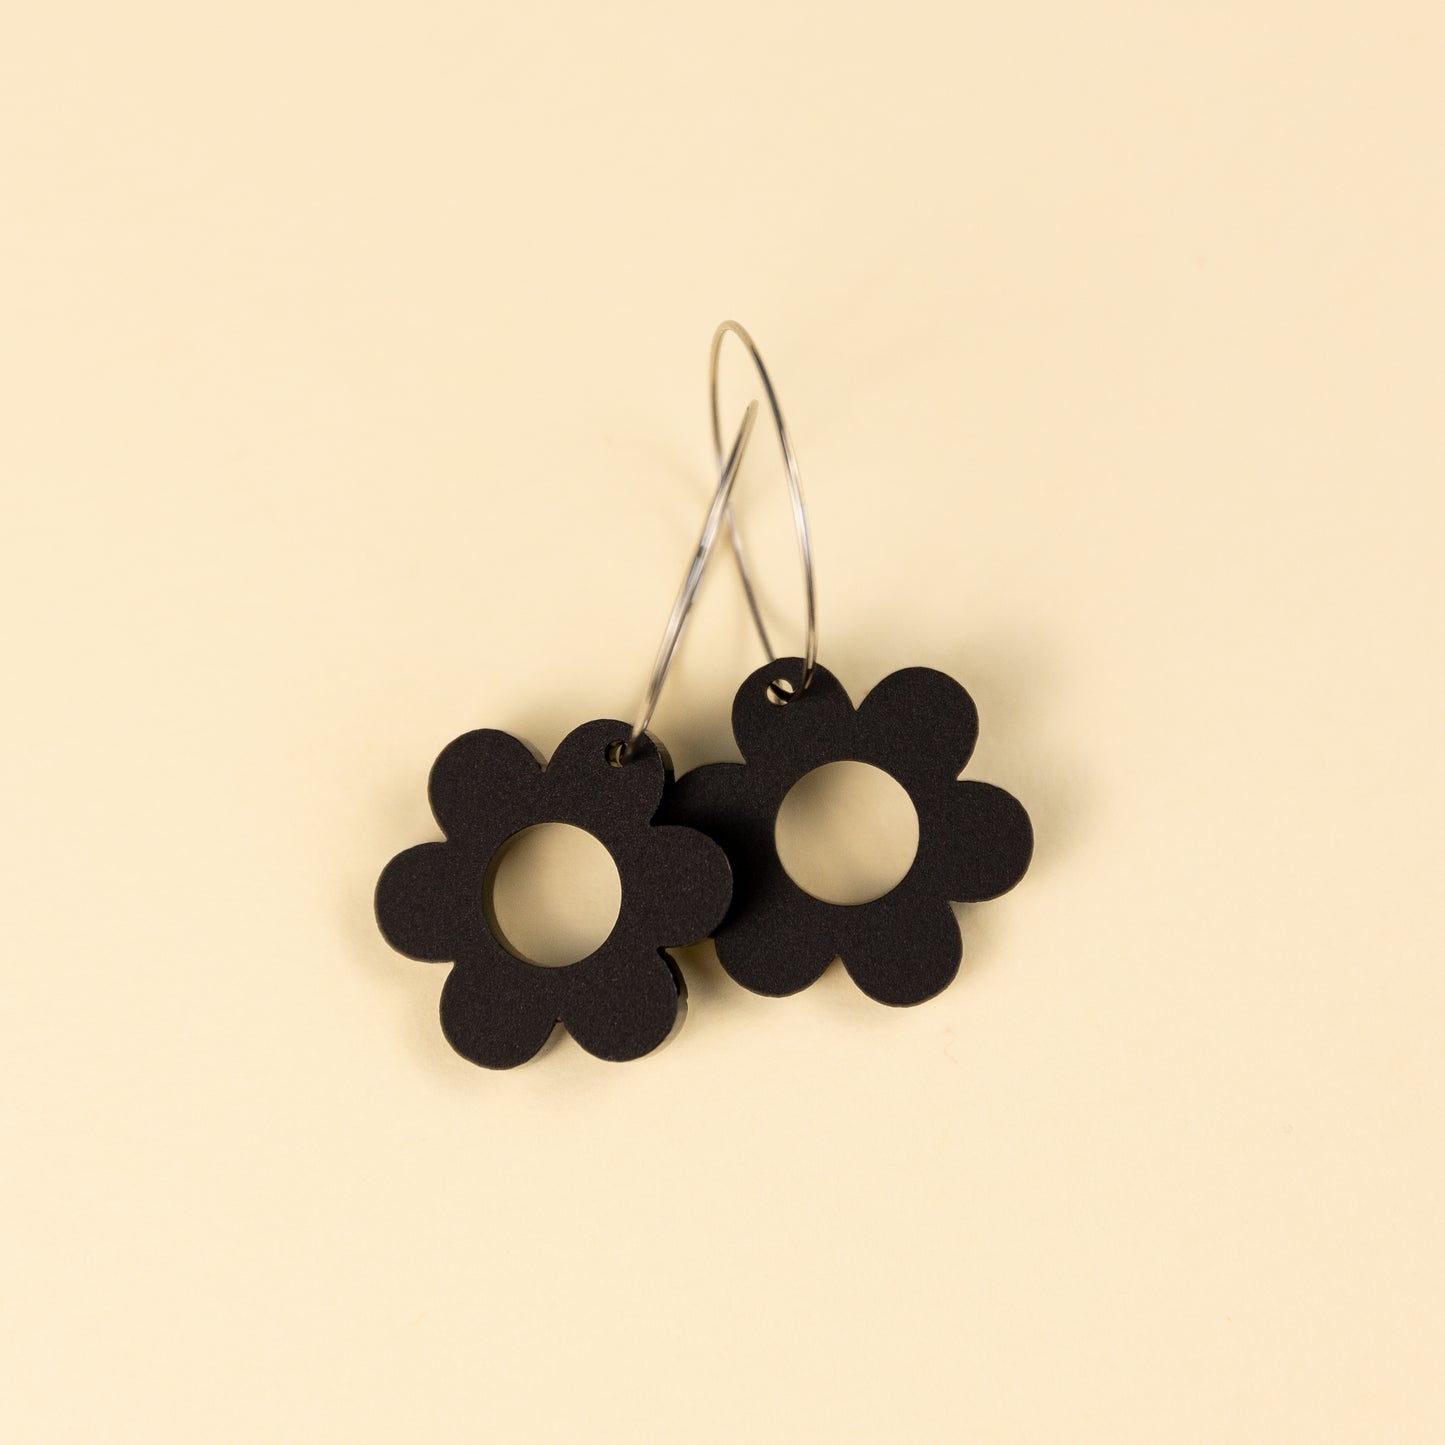 THE GROOVY DAISY HOOP in Black/ Lightweight Acrylic Statement Earrings